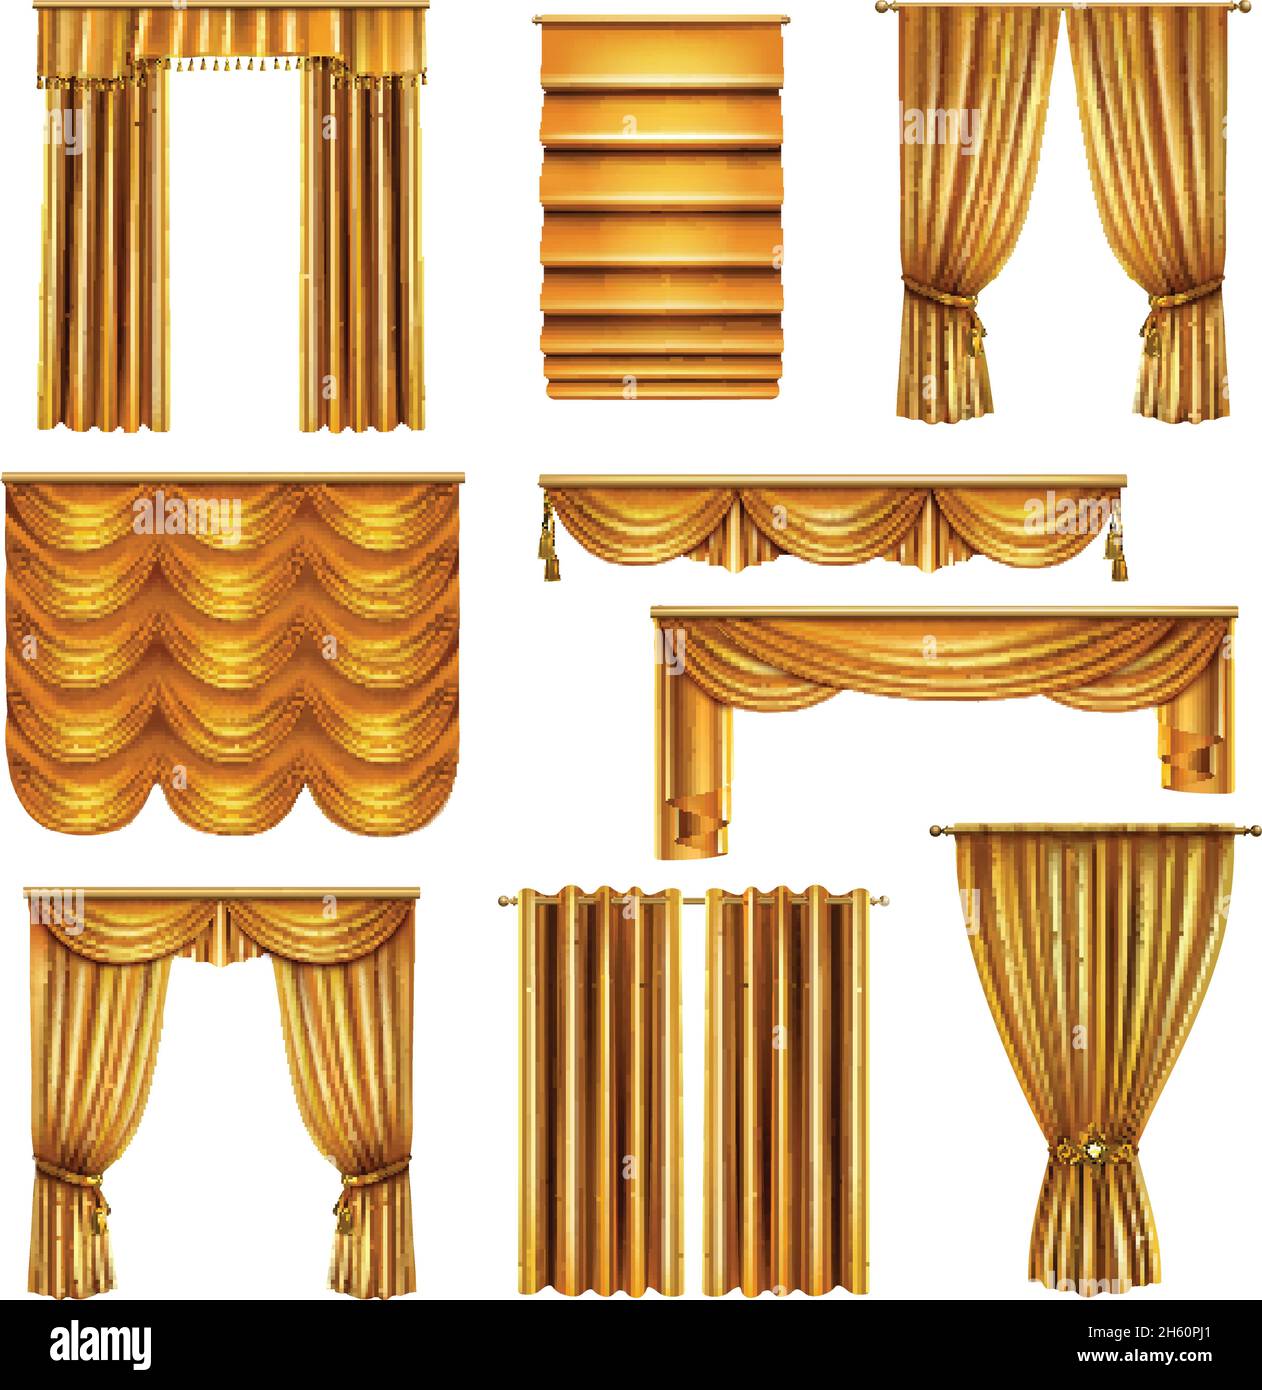 Ensemble de rideaux dorés de luxe et réalistes de différents motifs drapery avec éléments décoratifs illustration vectorielle isolée Illustration de Vecteur